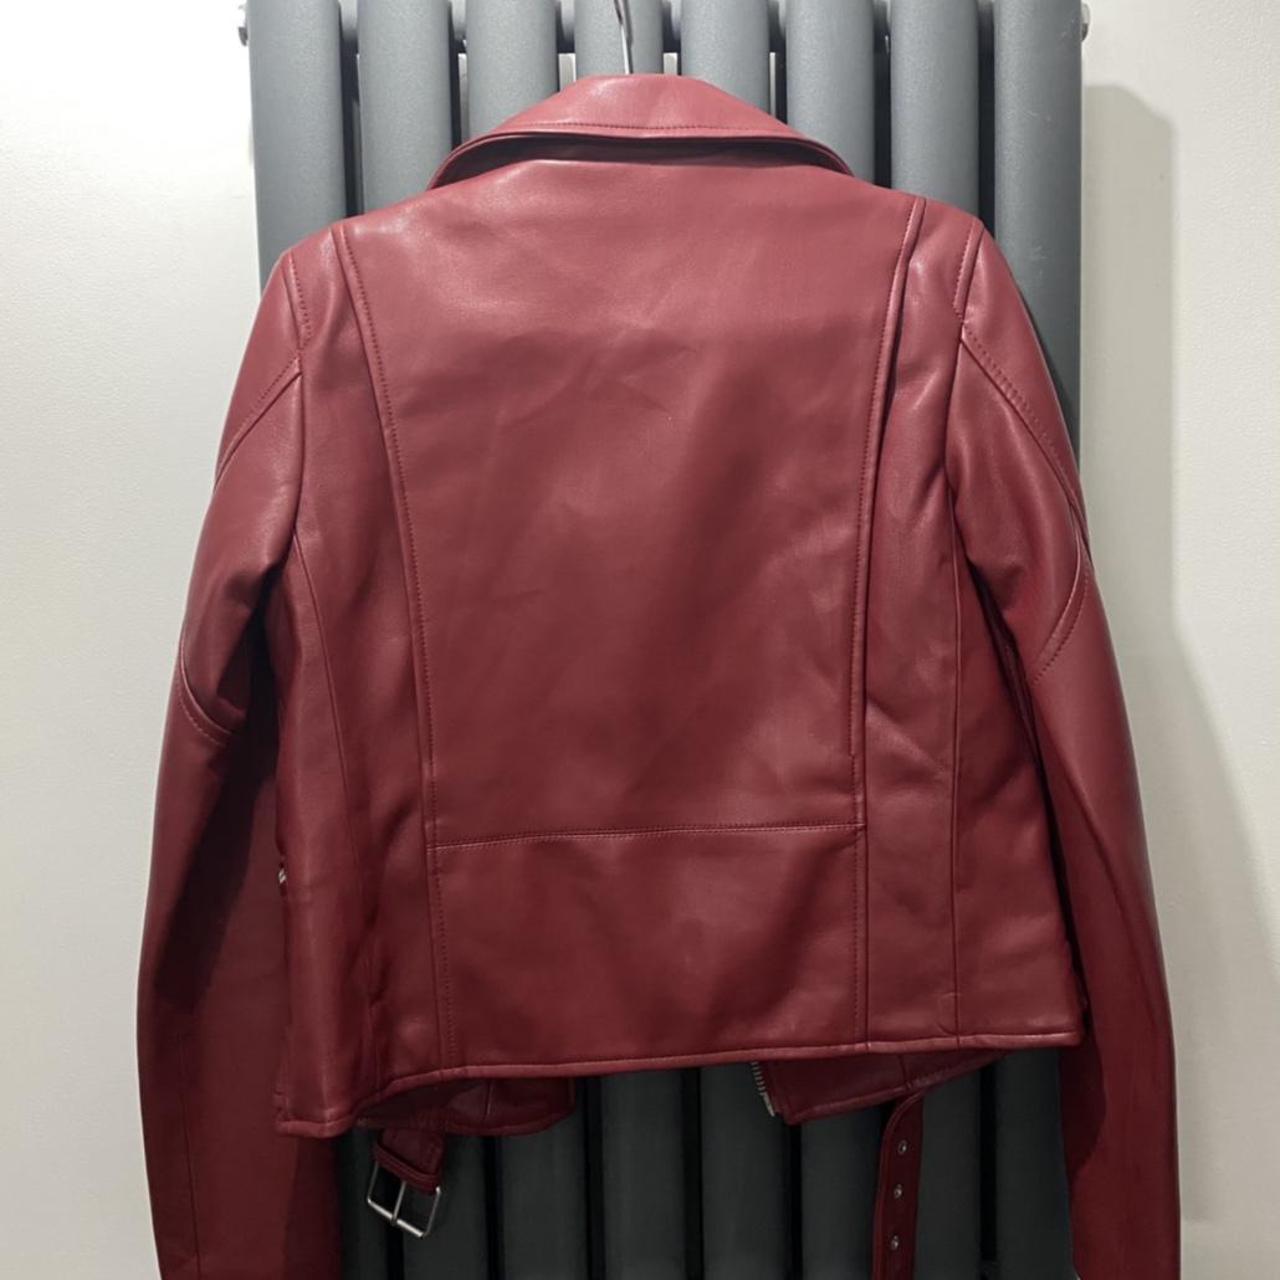 Zara Red Leather Jacket - Like New - Size XS #zara... - Depop